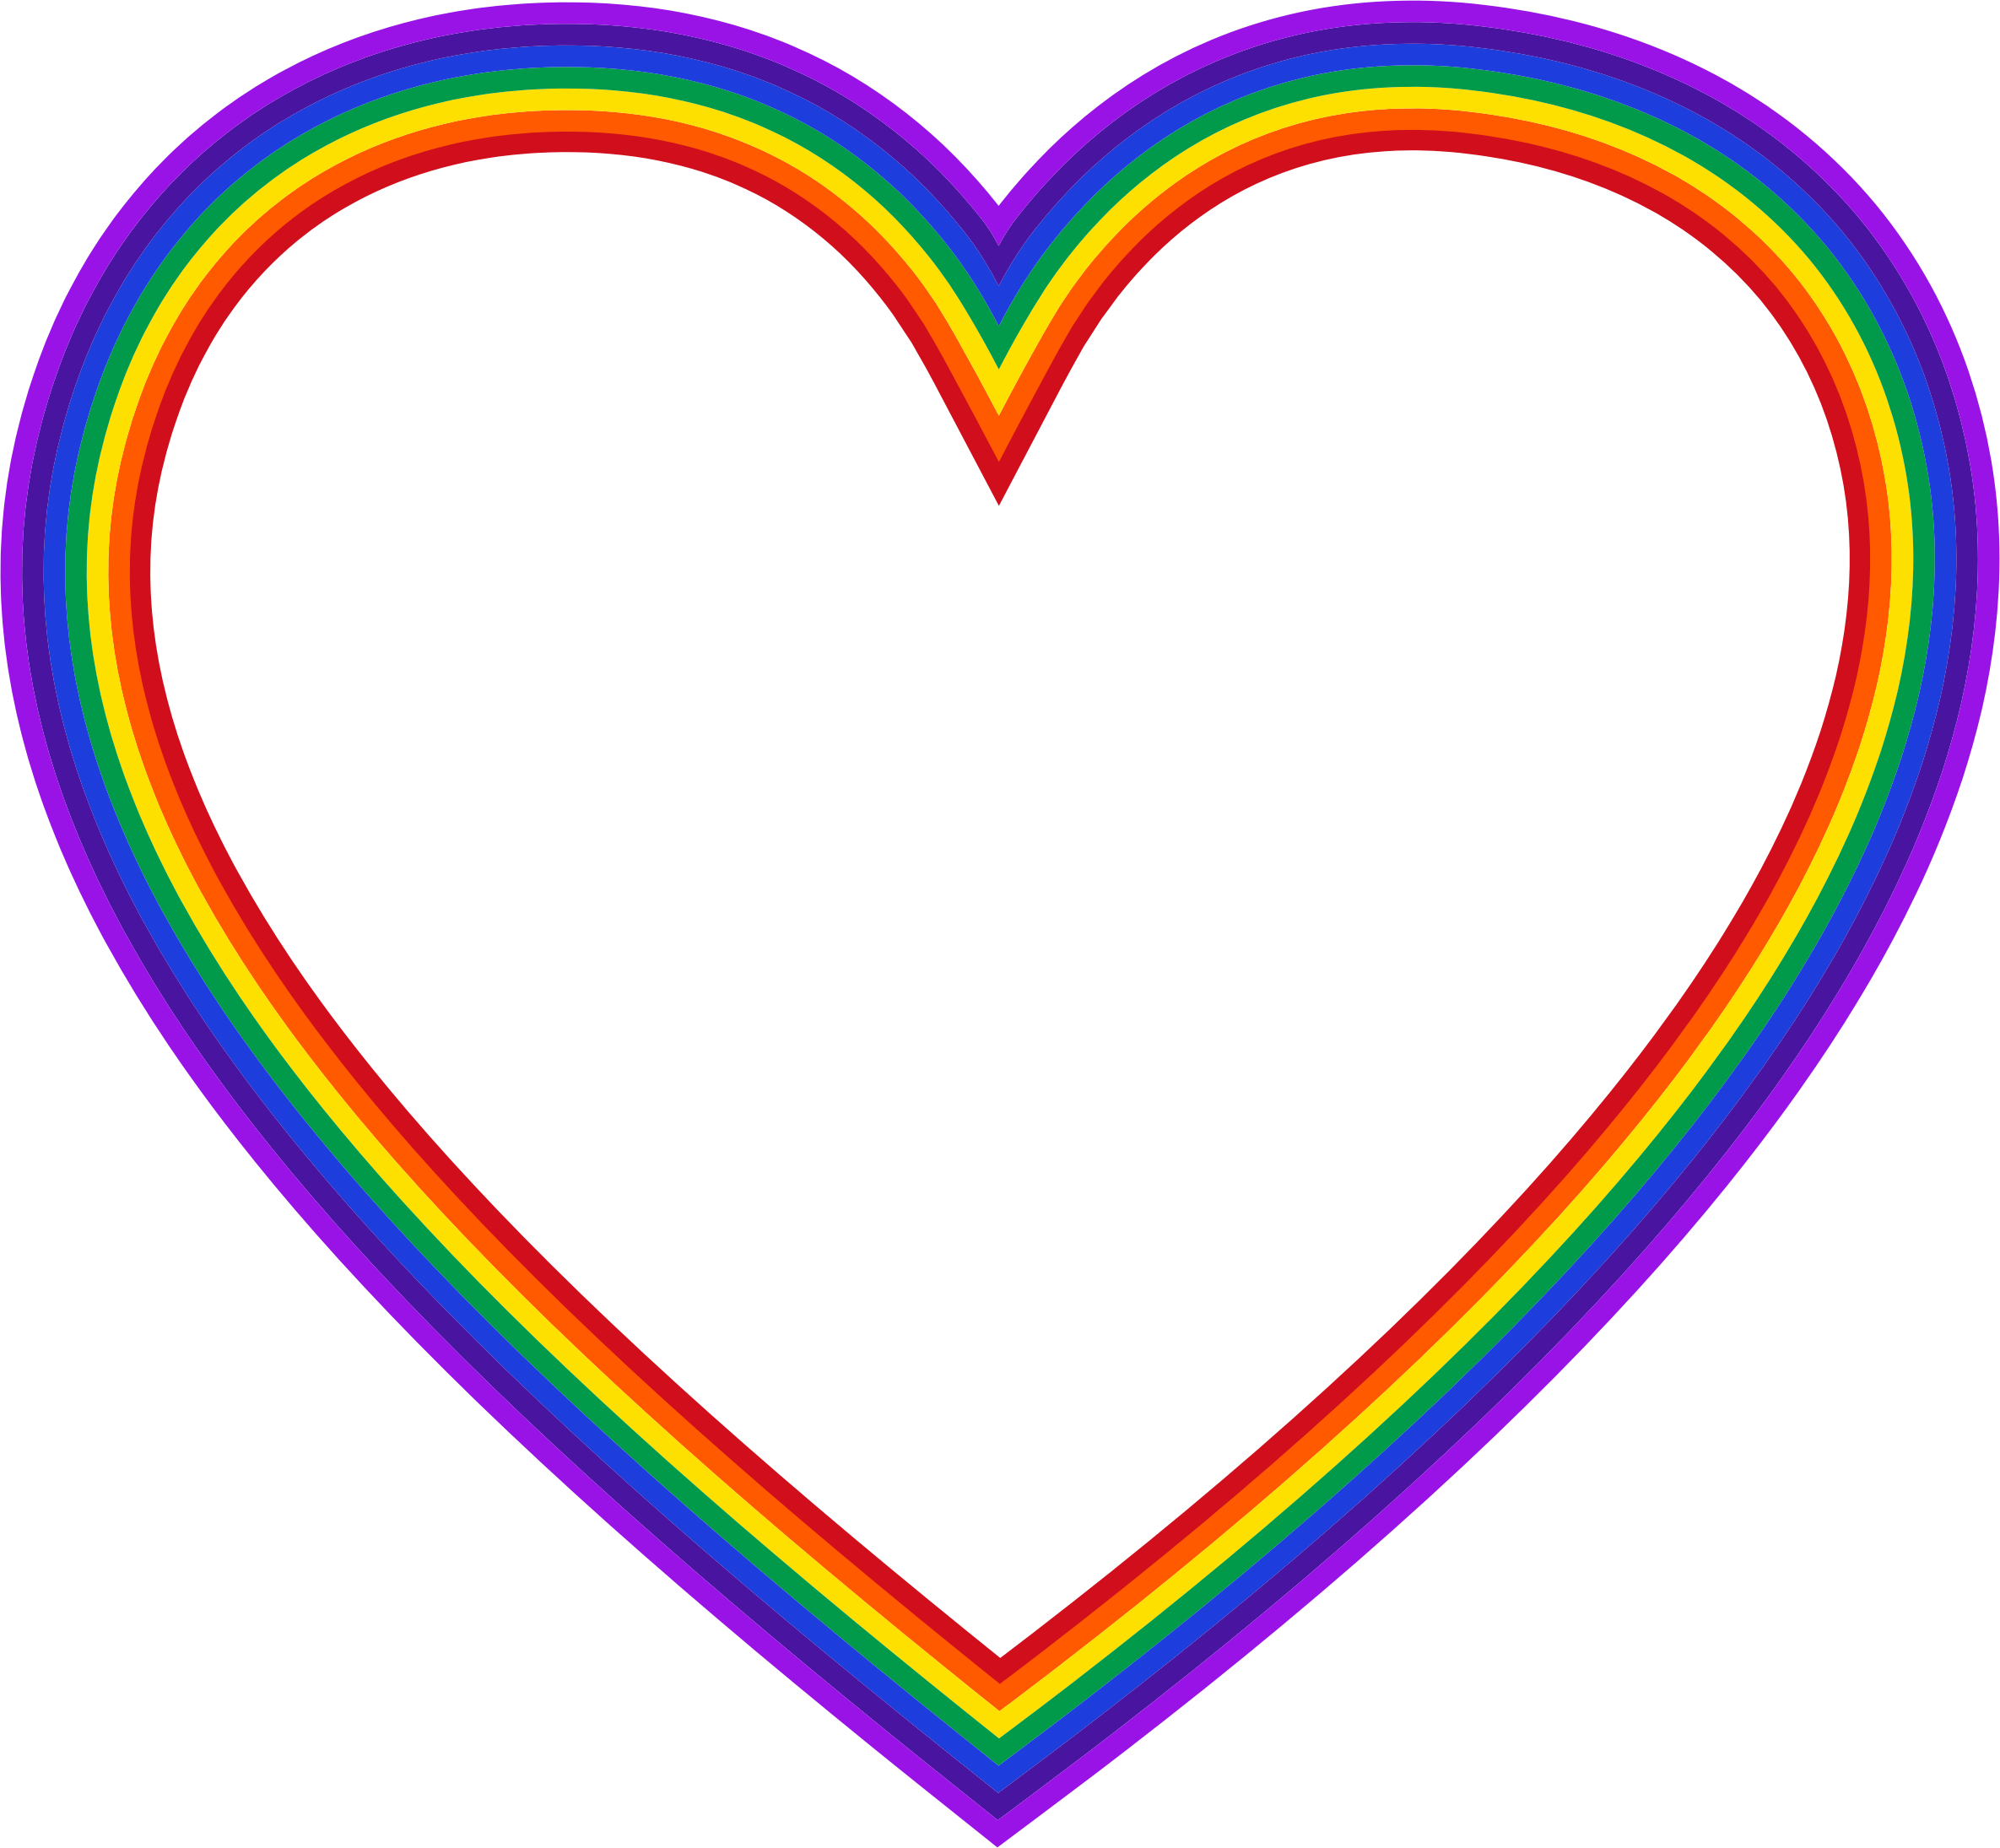 free rainbow heart clip art - photo #21